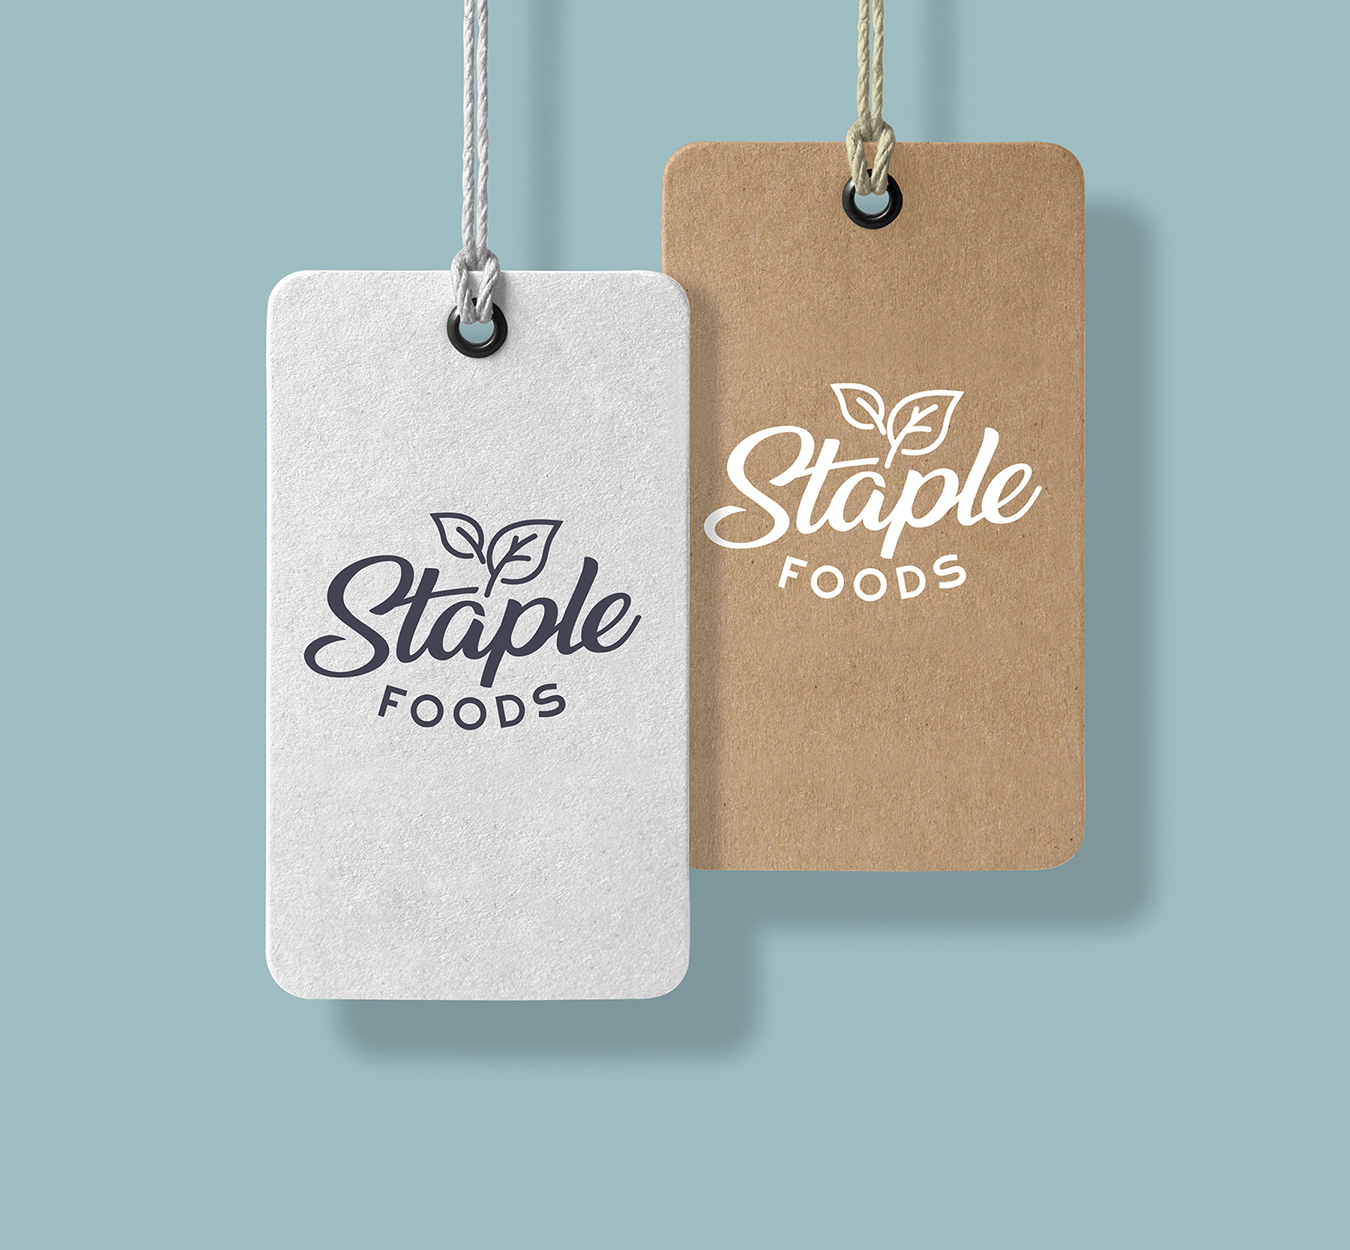 staple_foods_hangtags